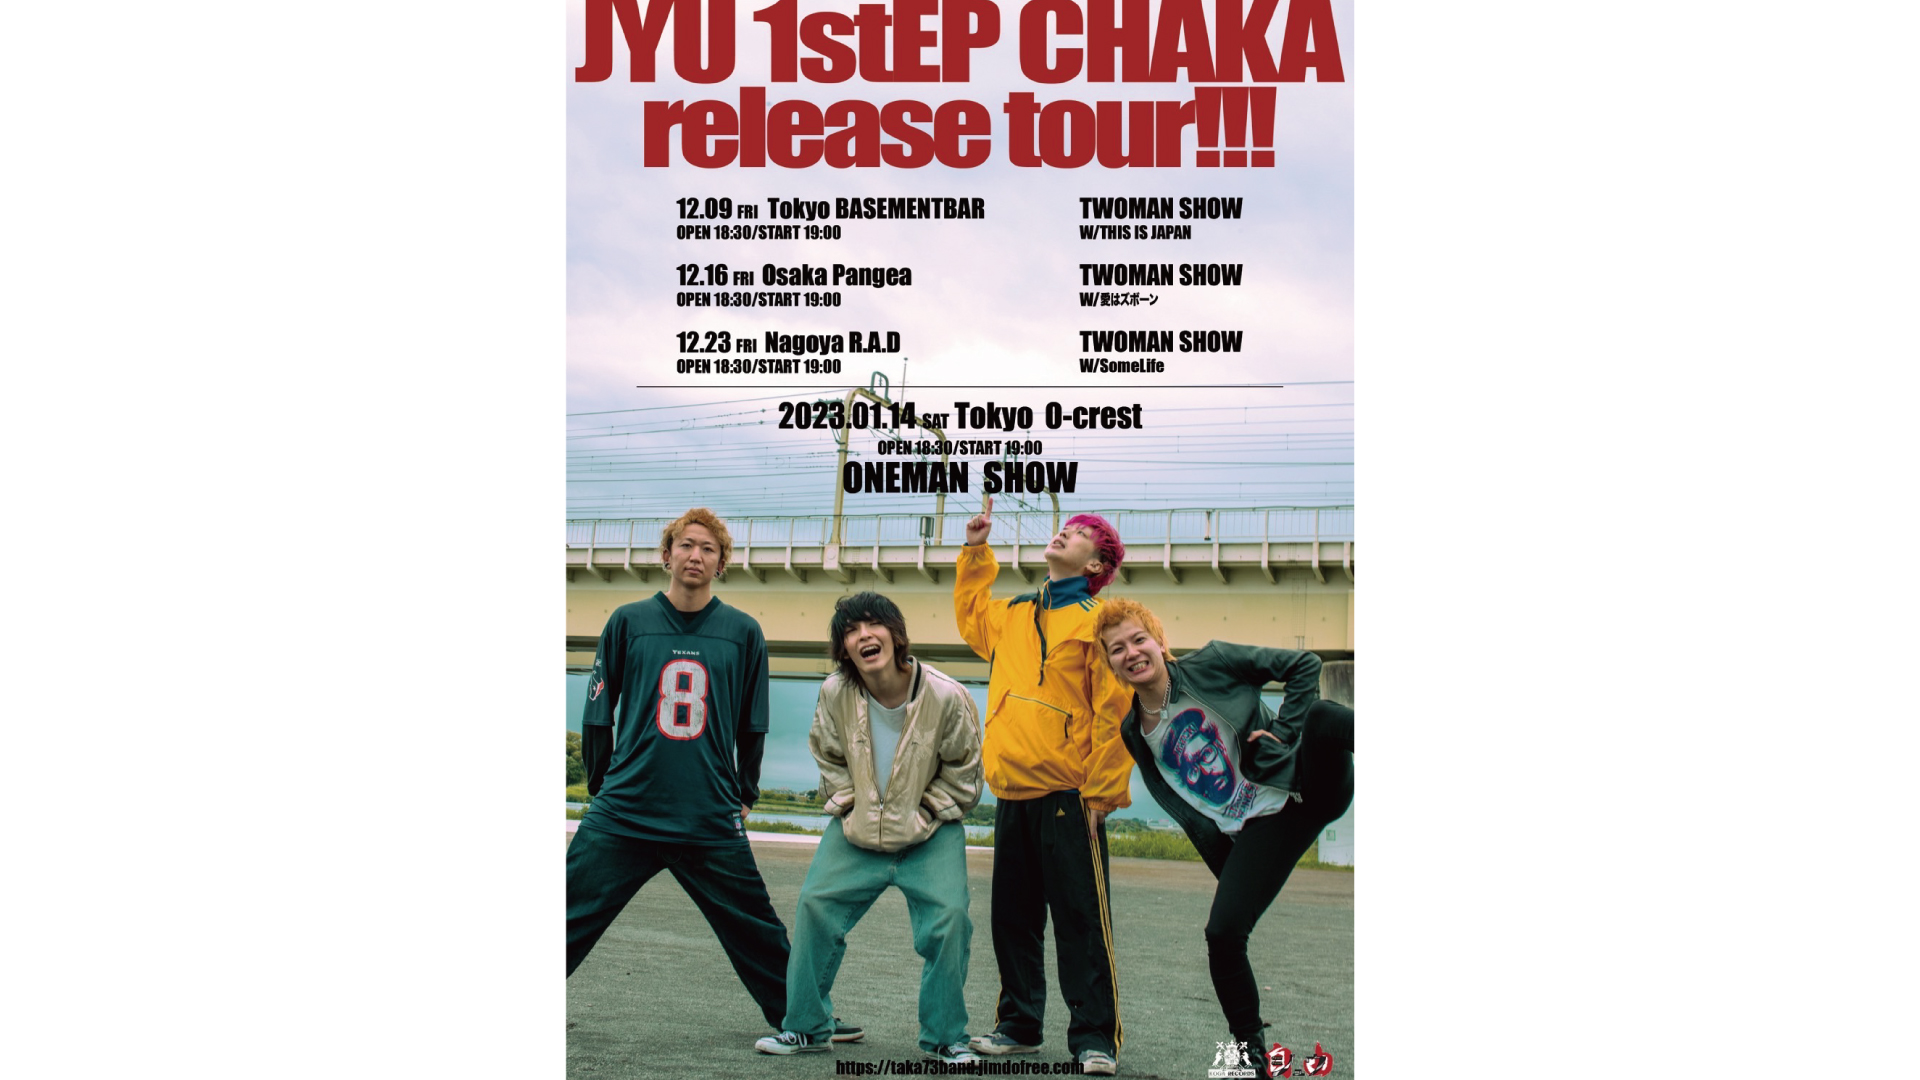 ジュウ 1st EP “CHAKA” Release Tour FINALワンマン 22/1/14